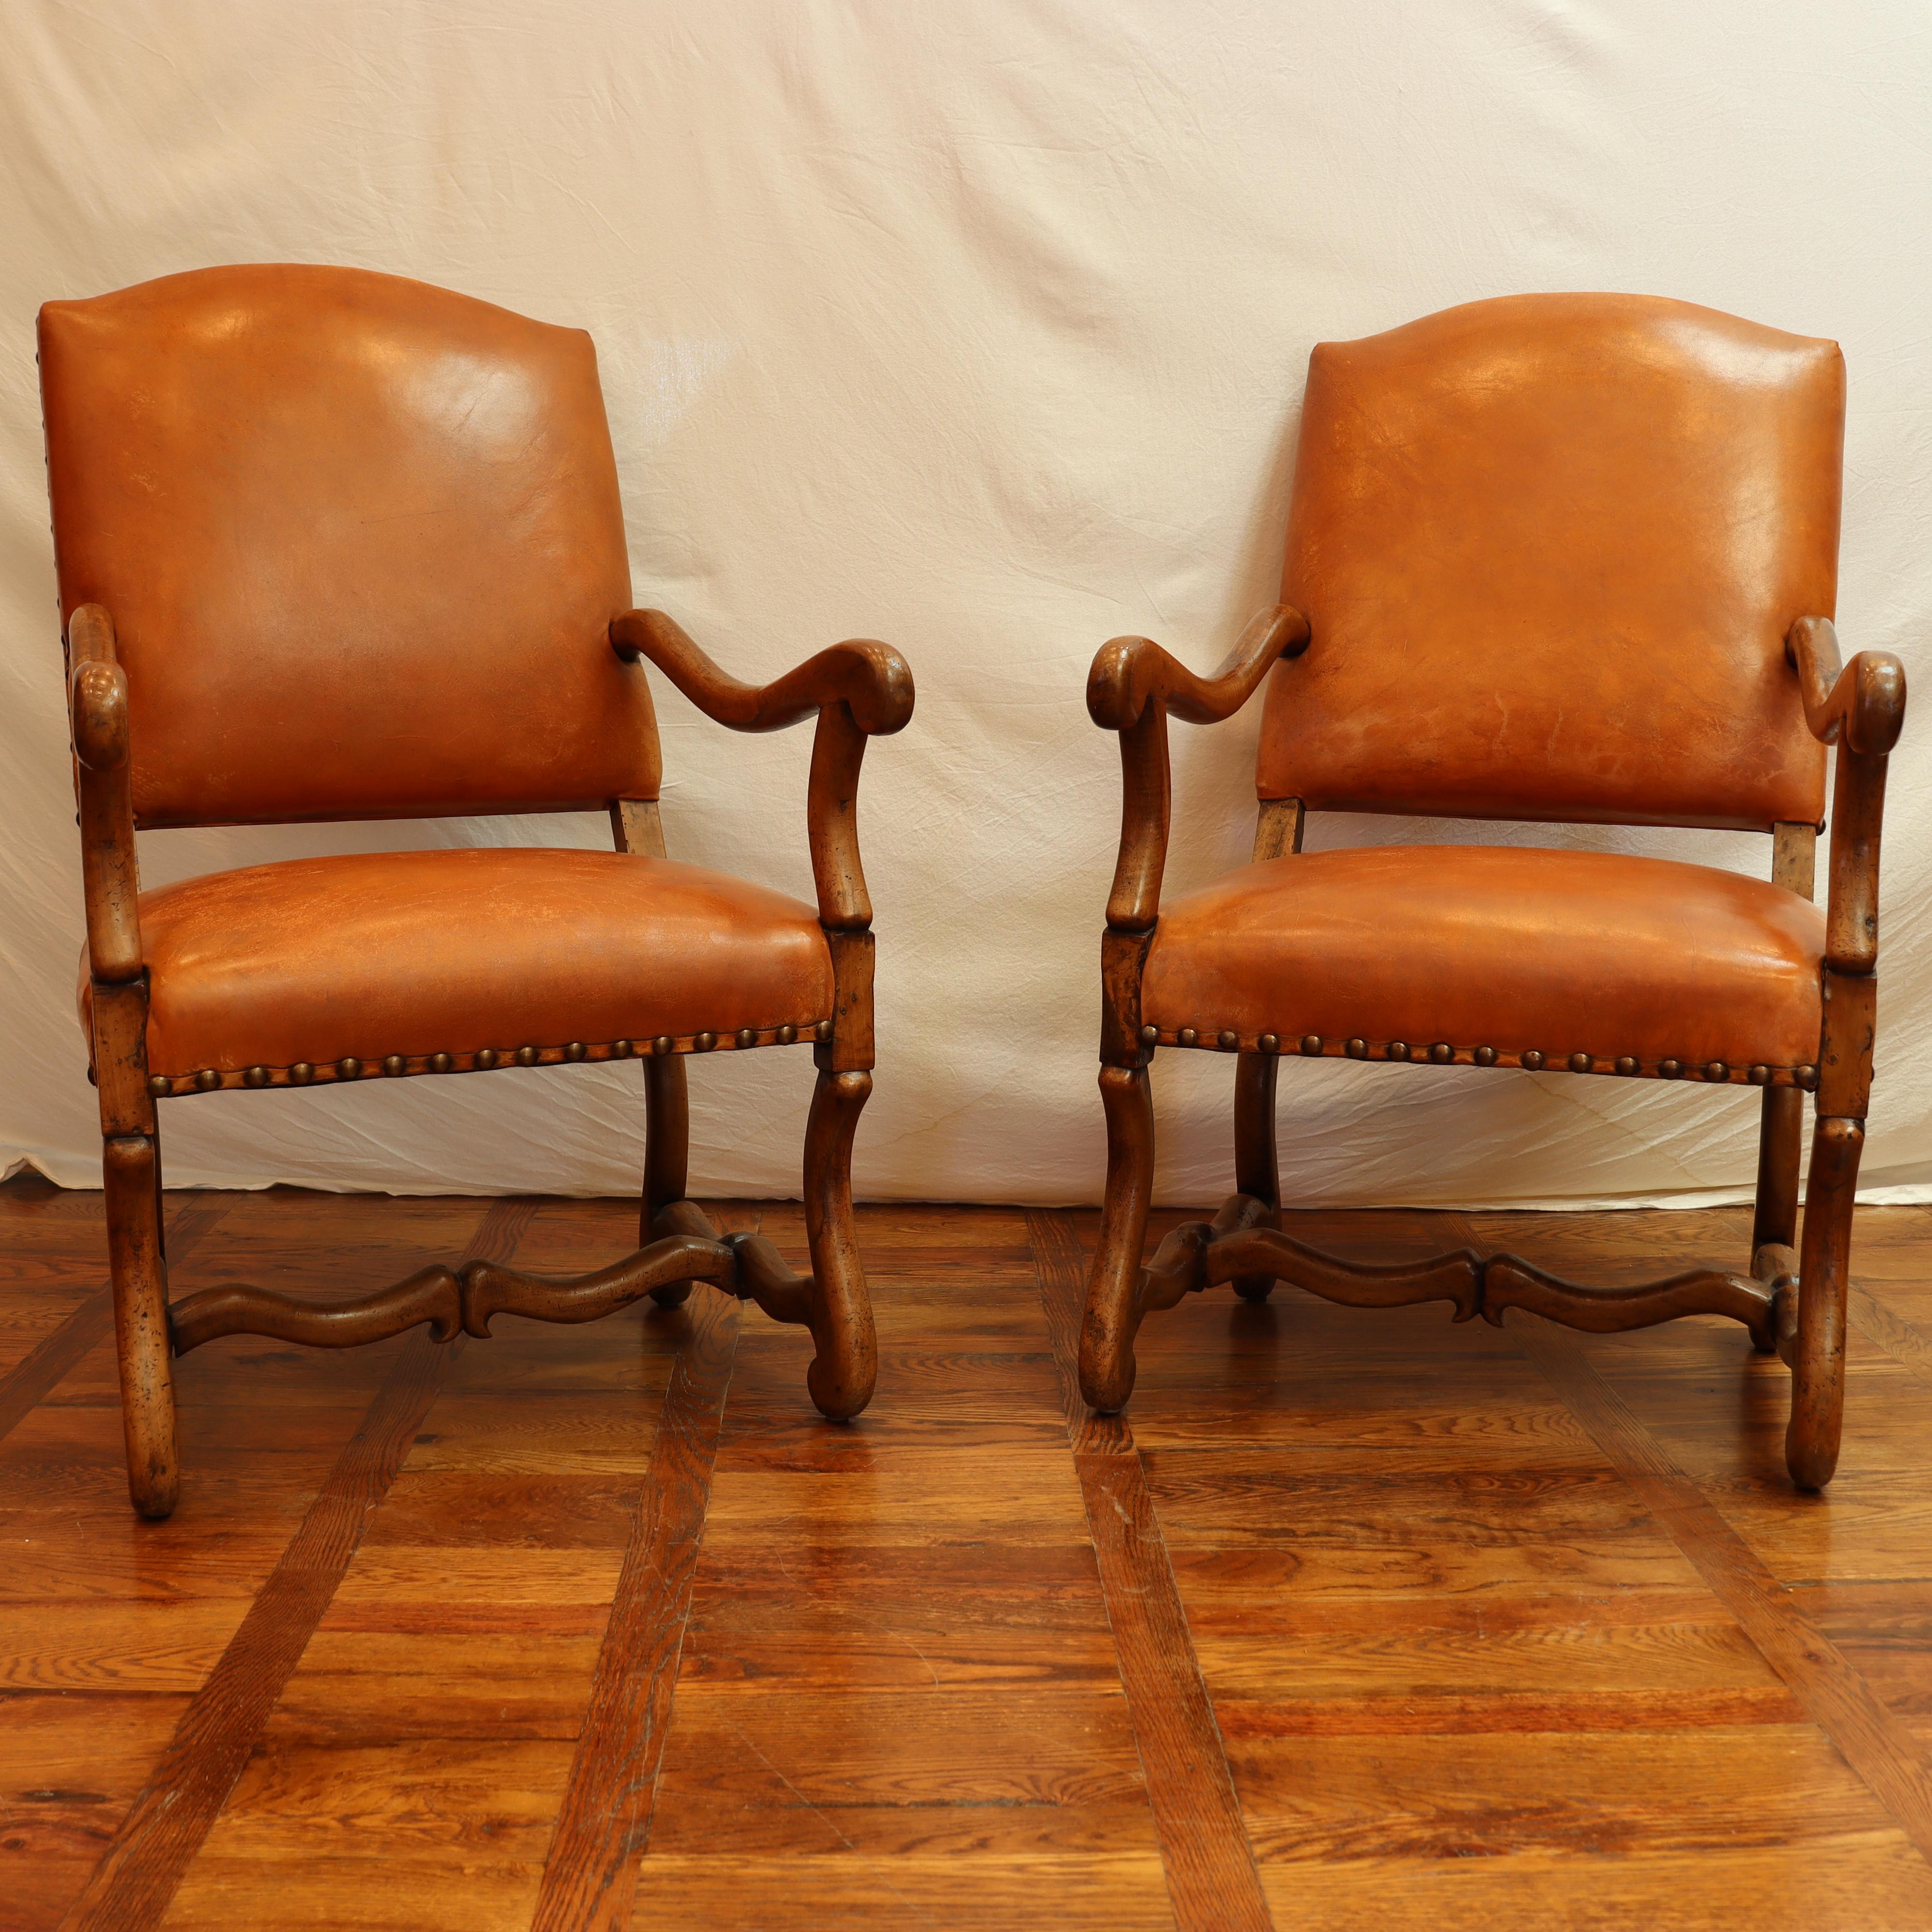 Paar gepolsterte Sessel aus Walnussholz im Louis-XIV-Stil, jeweils mit einer geformten Rückenlehne mit Messingnägeln, schrägen Armlehnen und einwärts gerichteten Beinen